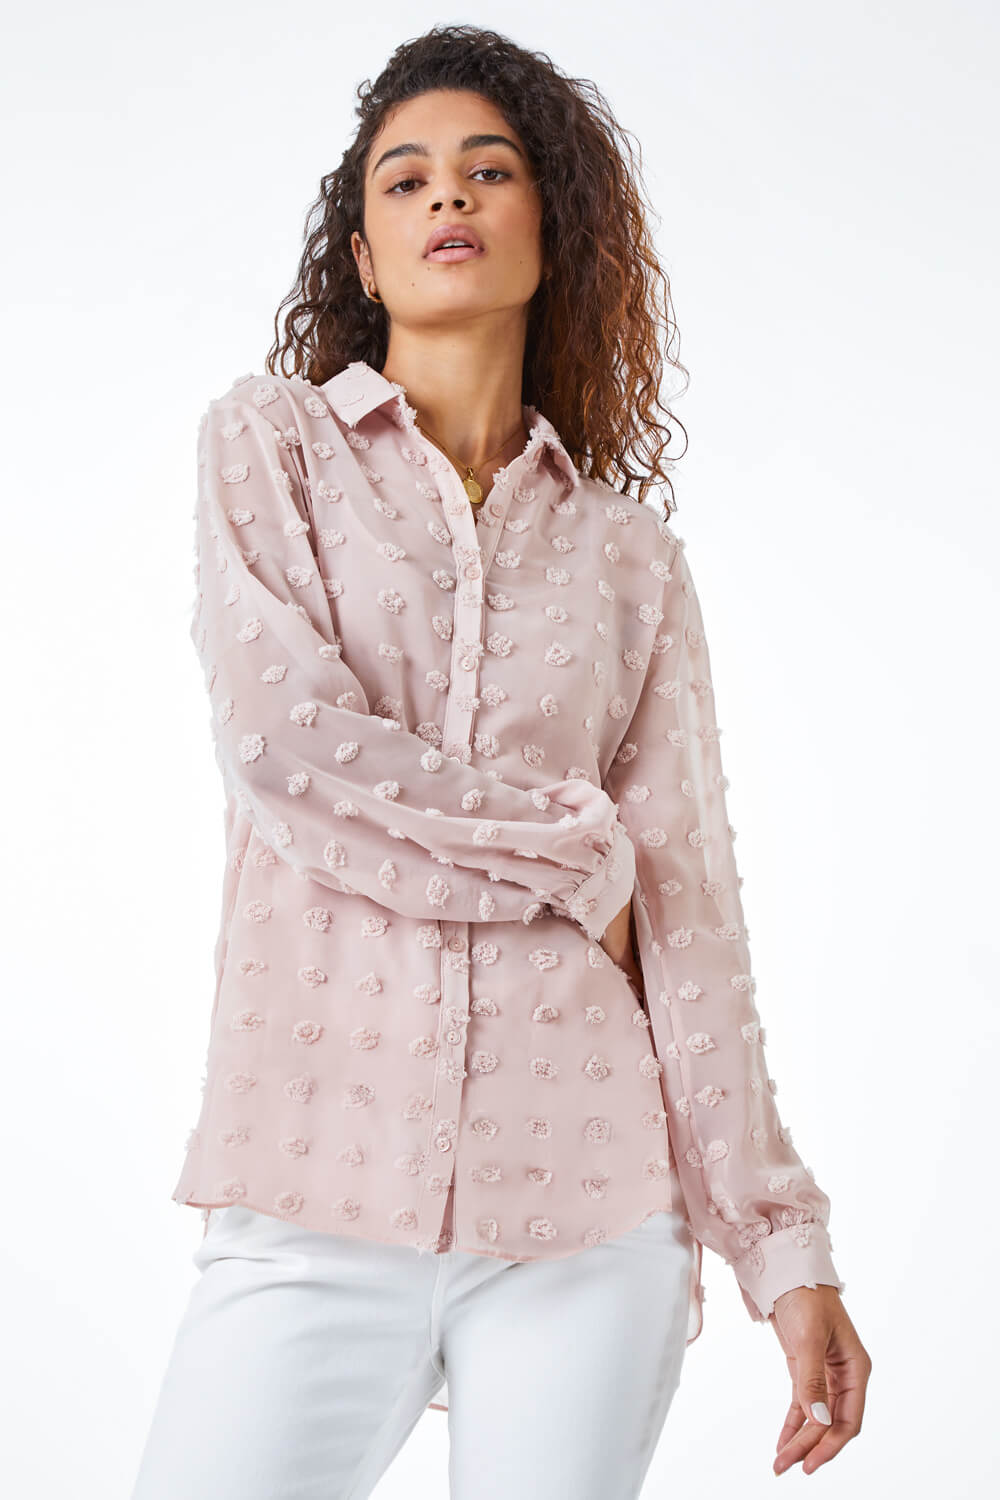 Textured Spot Button Up Blouse in Light Pink - Roman Originals UK